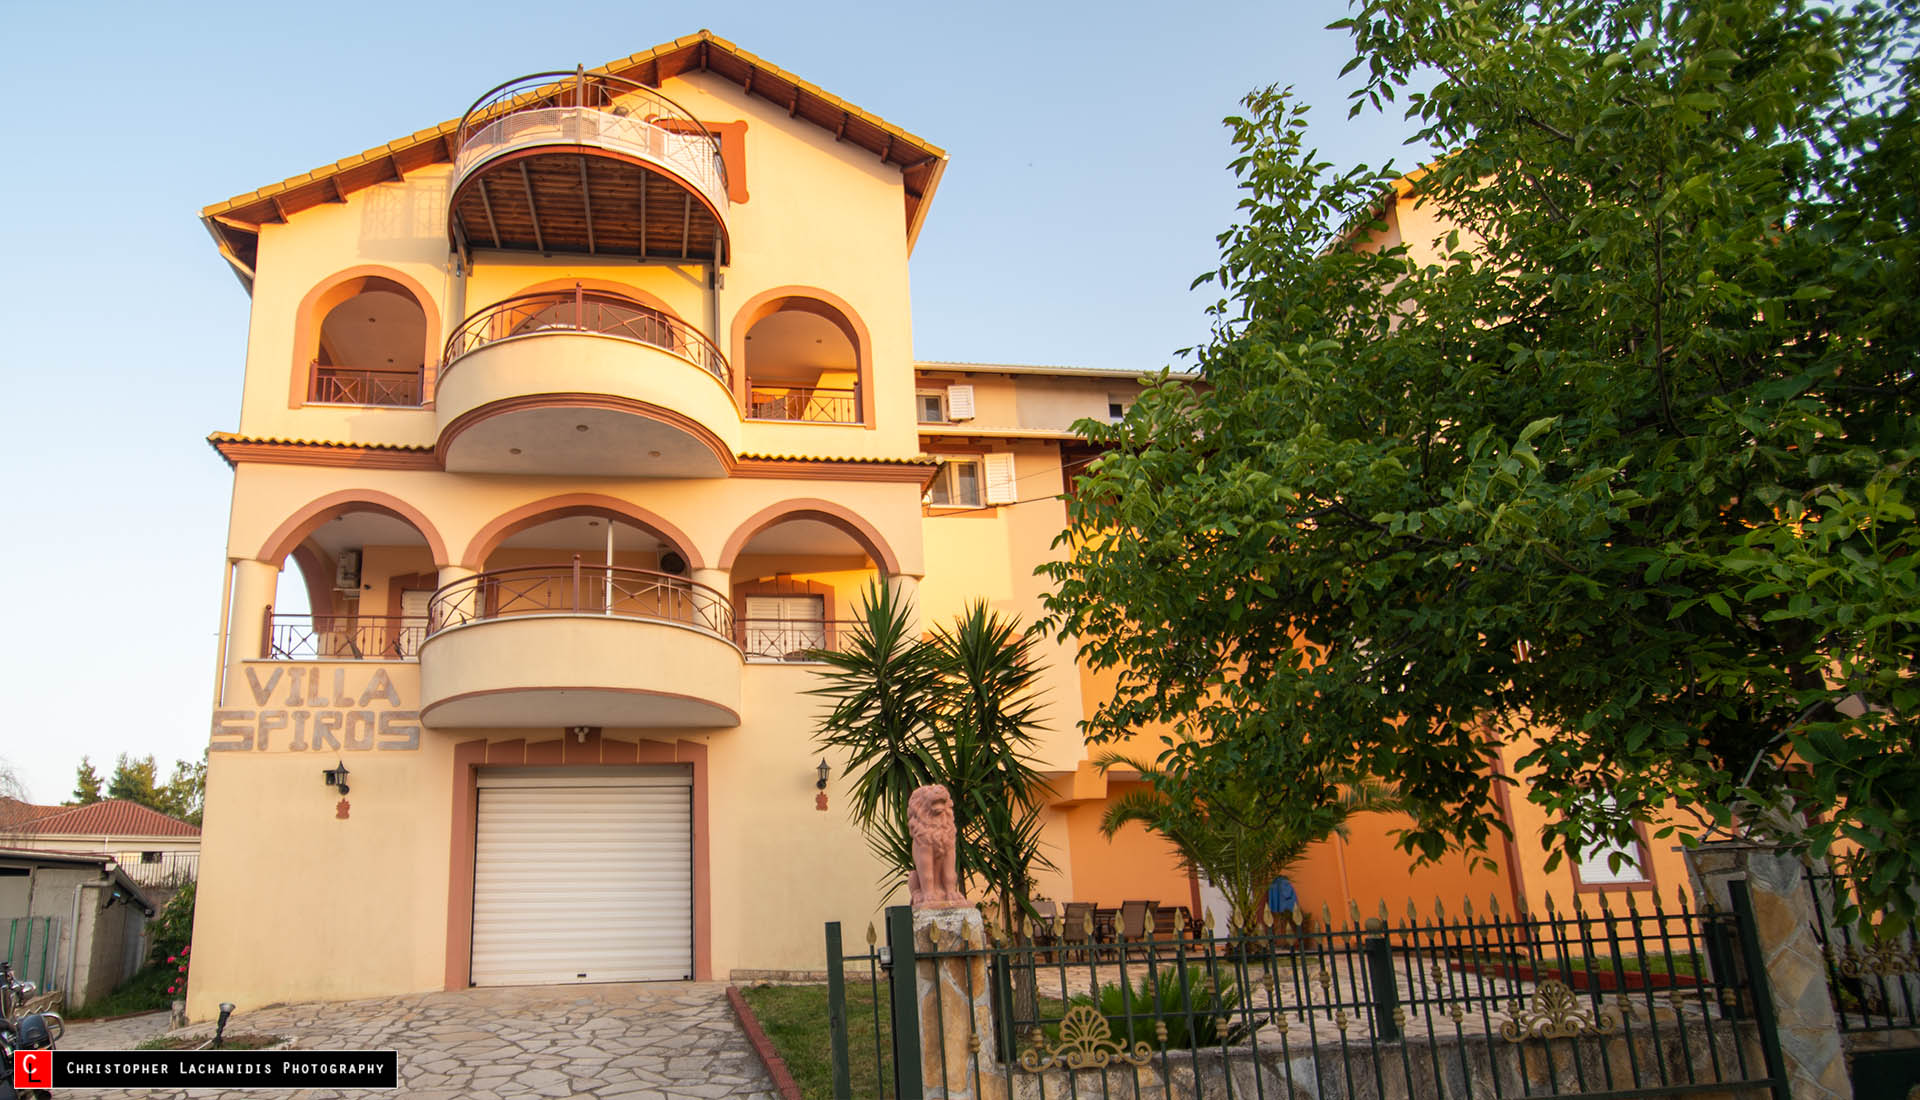 Apartments for rent Villa Spyros Perdika Thesprotia Epirus Greece!